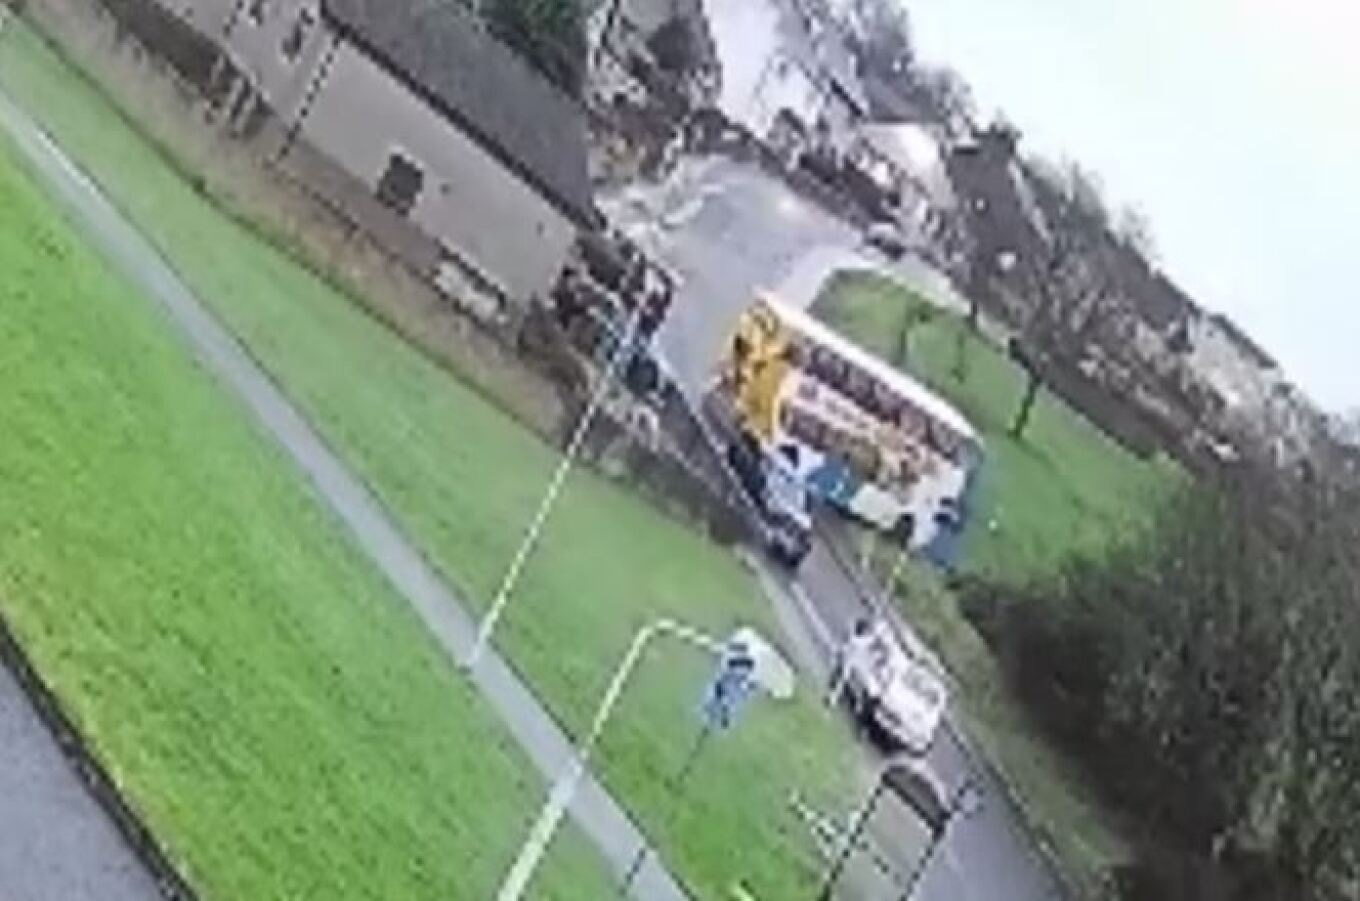 Λεωφορείο γλίστρησε στον πάγο: Απίστευτο βίντεο με διώροφο σχολικό